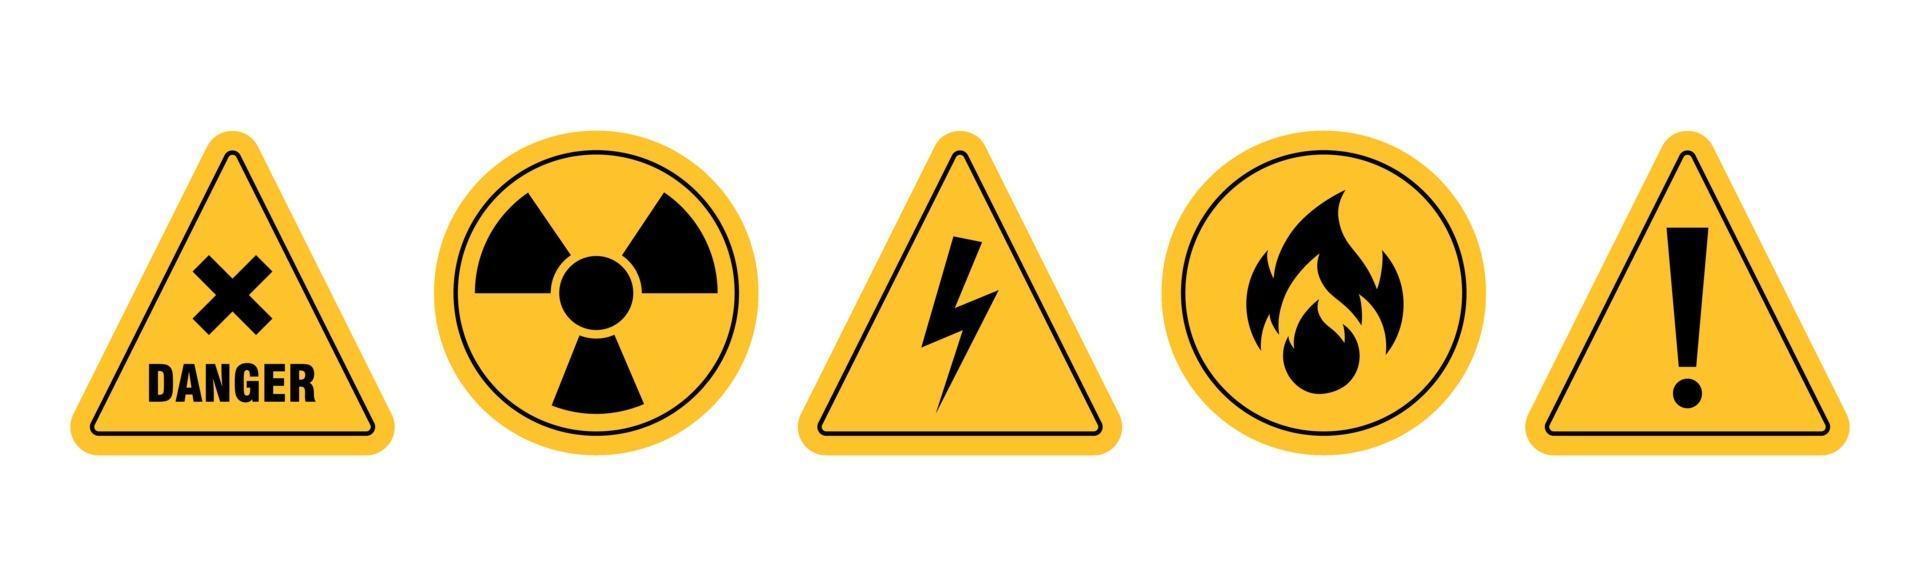 ícones de aviso de formas redondas e triangulares em fundo branco - ilustração vetorial vetor